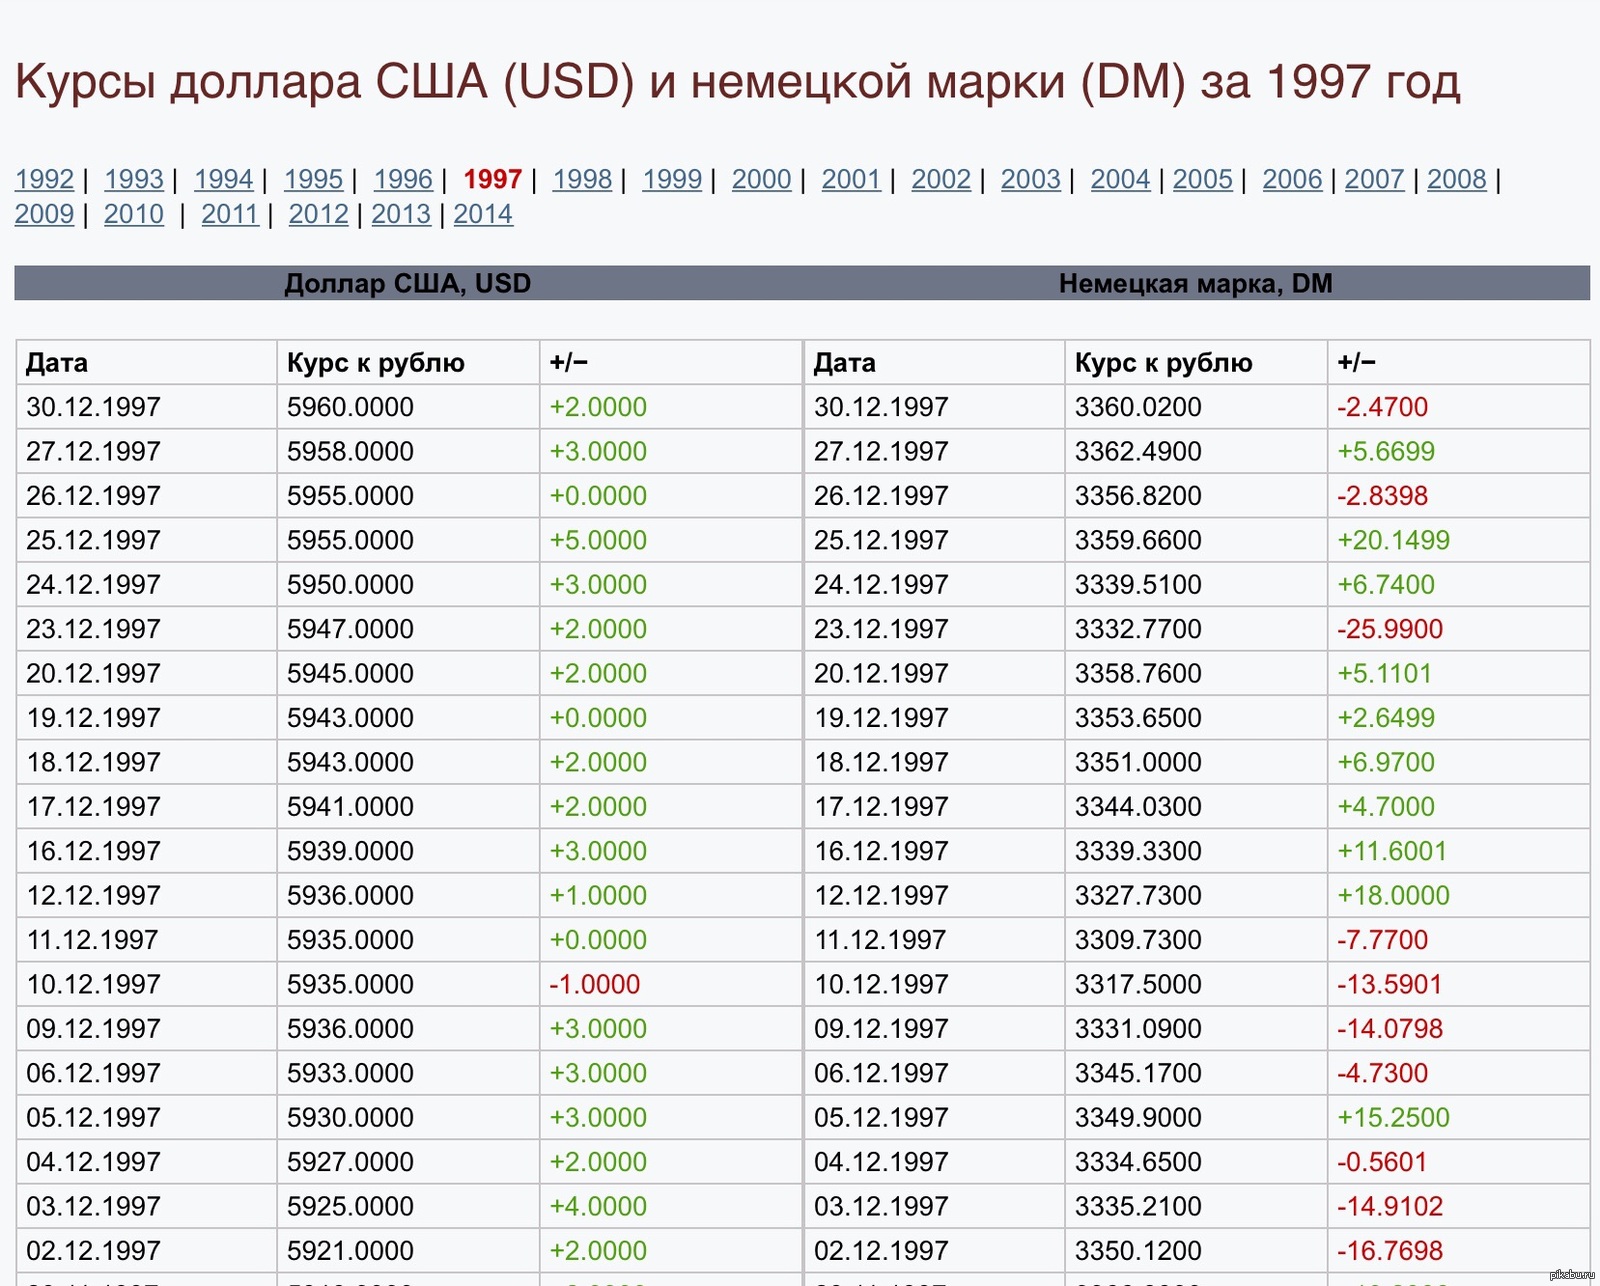 Доллары в рубли 2004. Курс доллара. Доллар в 1997 году в рублях. Курс доллара таблица. Курс доллара в 1997 году.